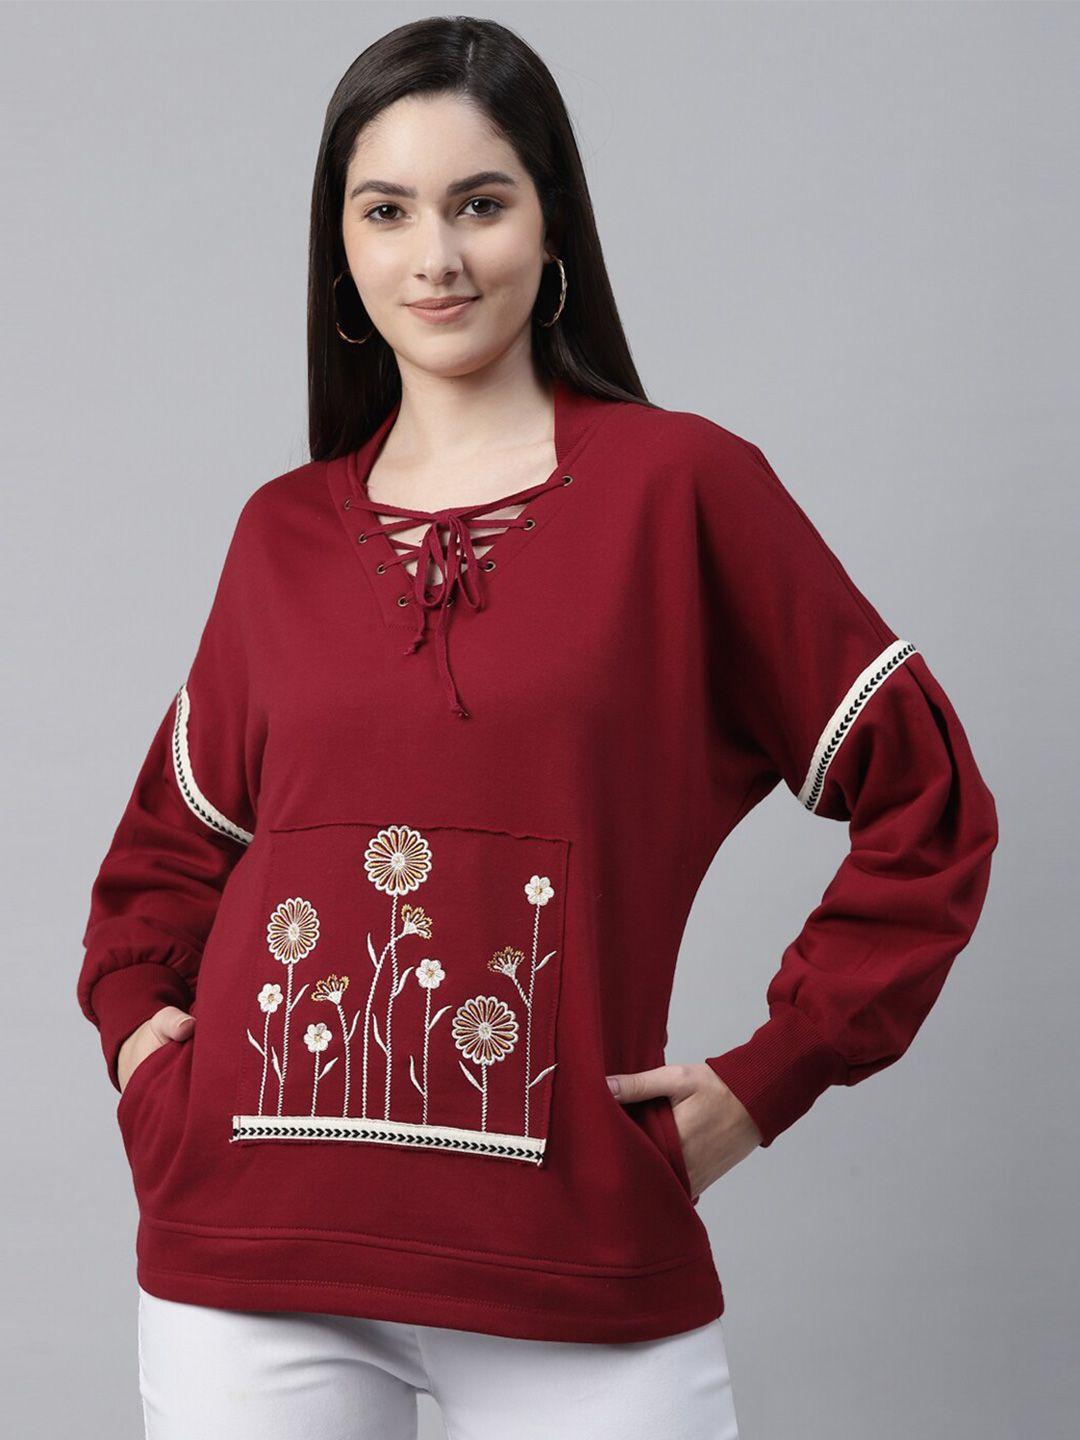 taurus women red embroidered sweatshirt